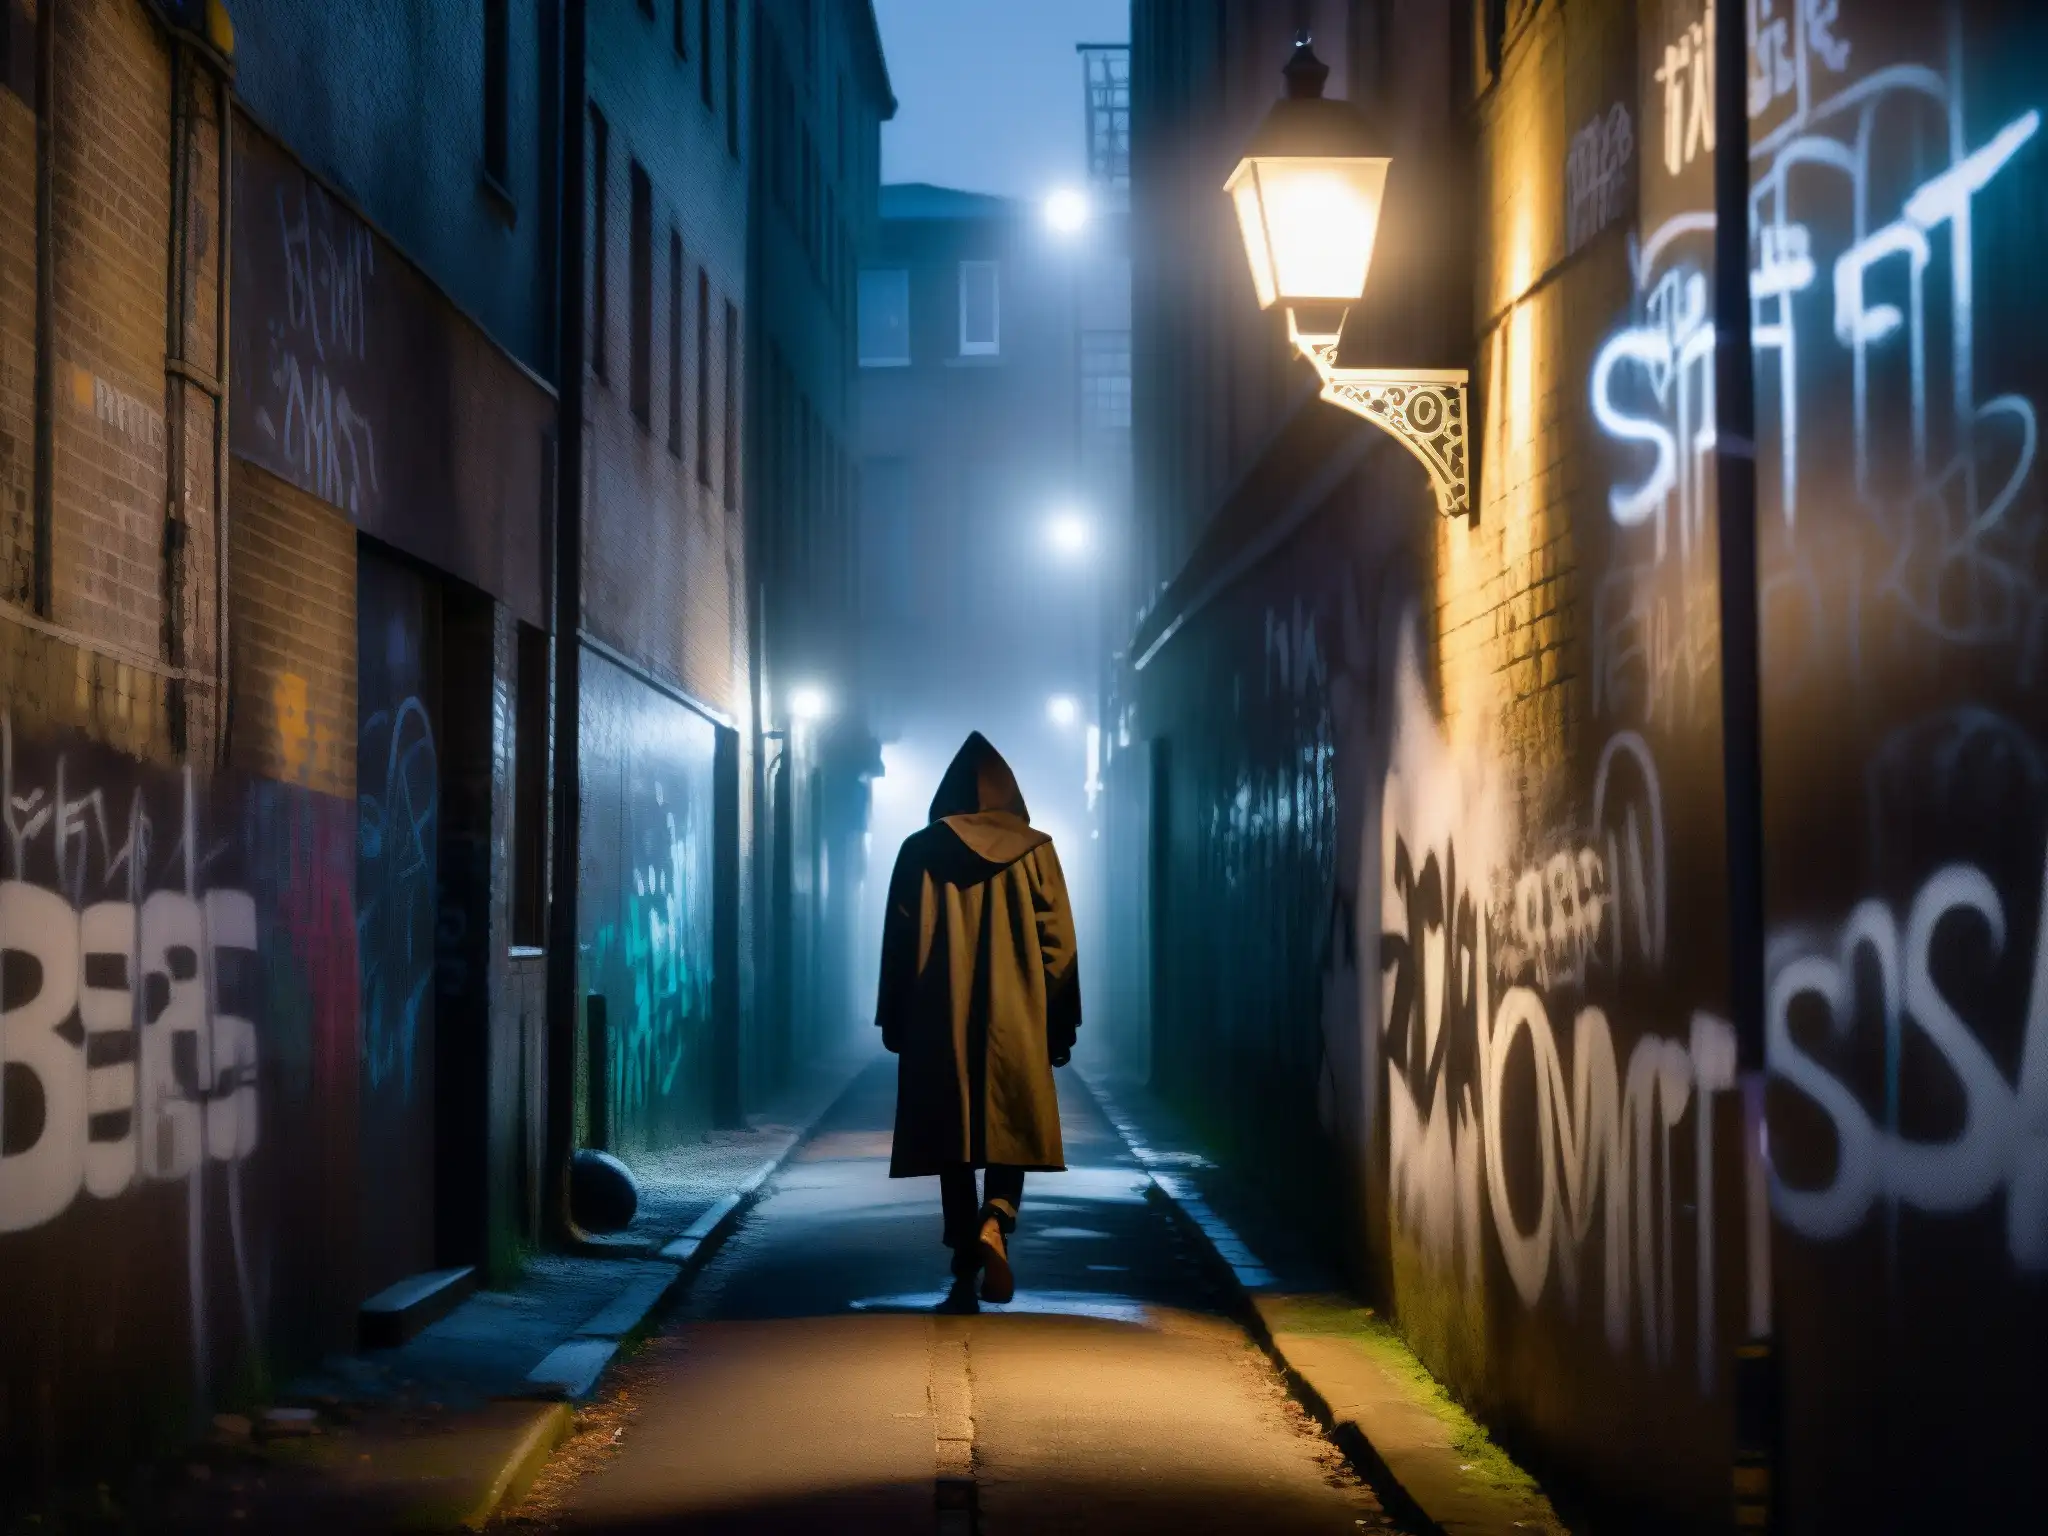 Un callejón oscuro y misterioso de noche, con grafitis inquietantes y una figura en la distancia, evocando fascinación por lo macabro